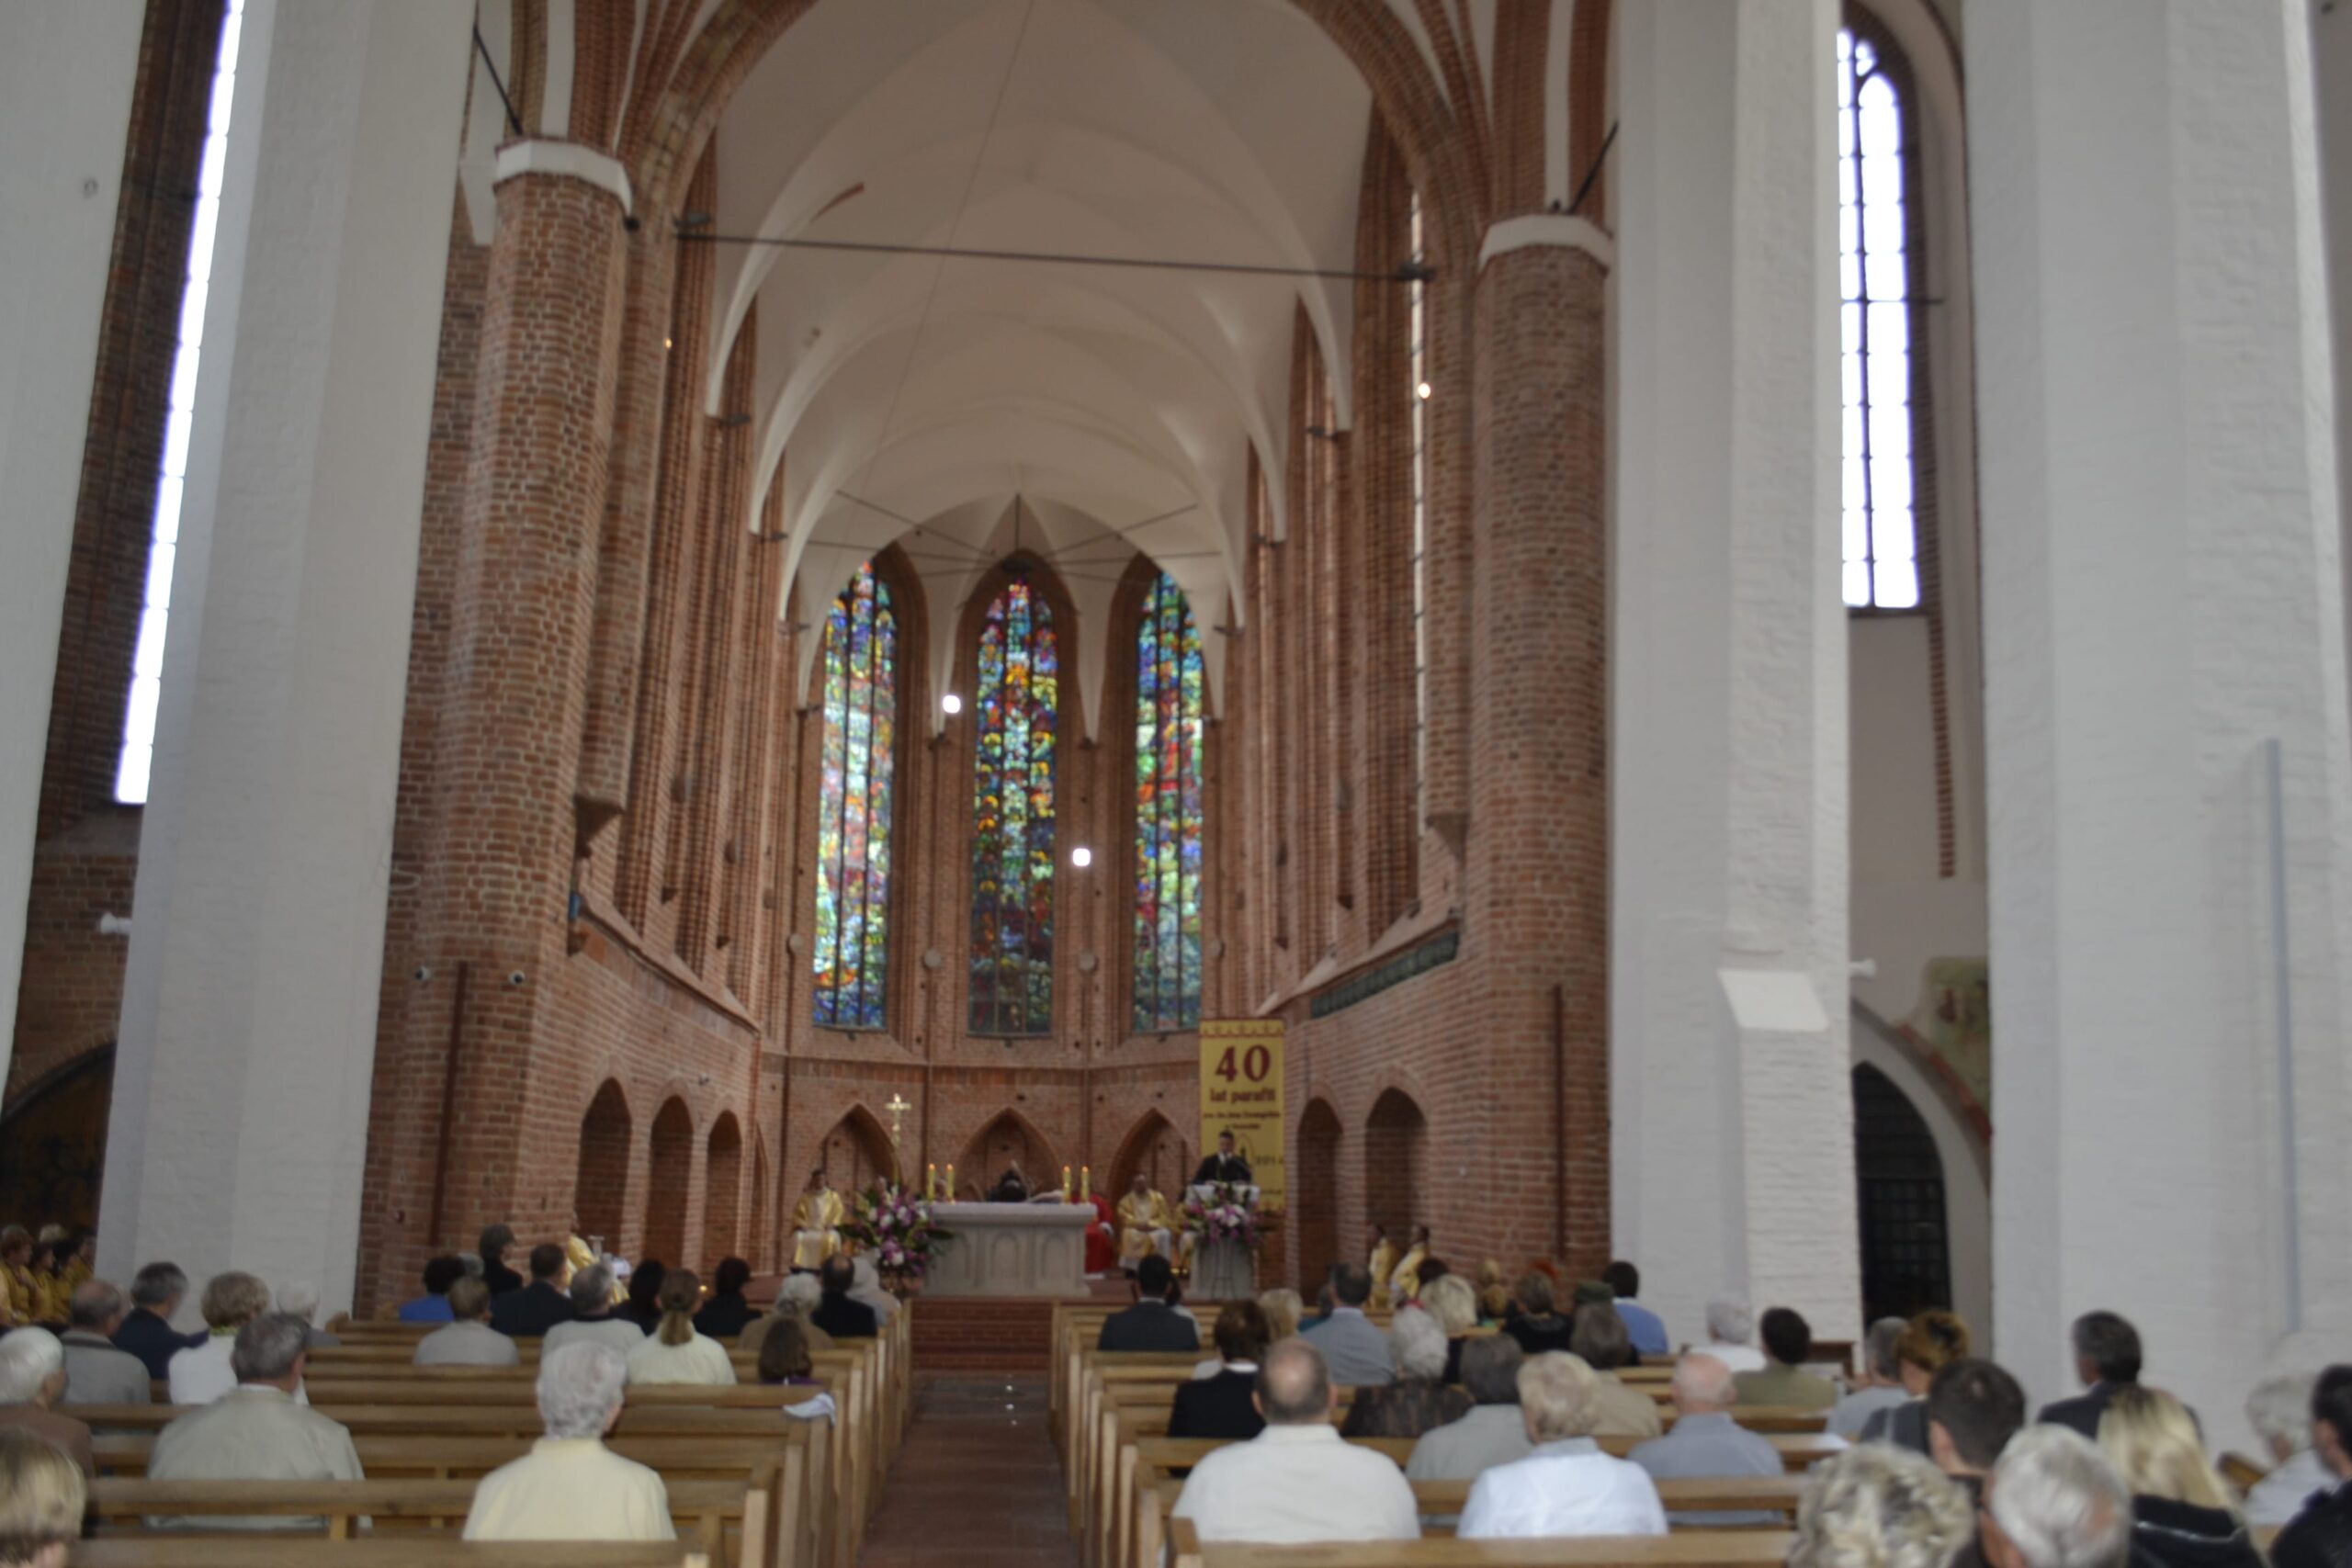 Uroczysta msza na zakończenie projektu renowacji i konserwacji wnętrza kościoła pw. św. Jana Ewangelisty w Szczecinie